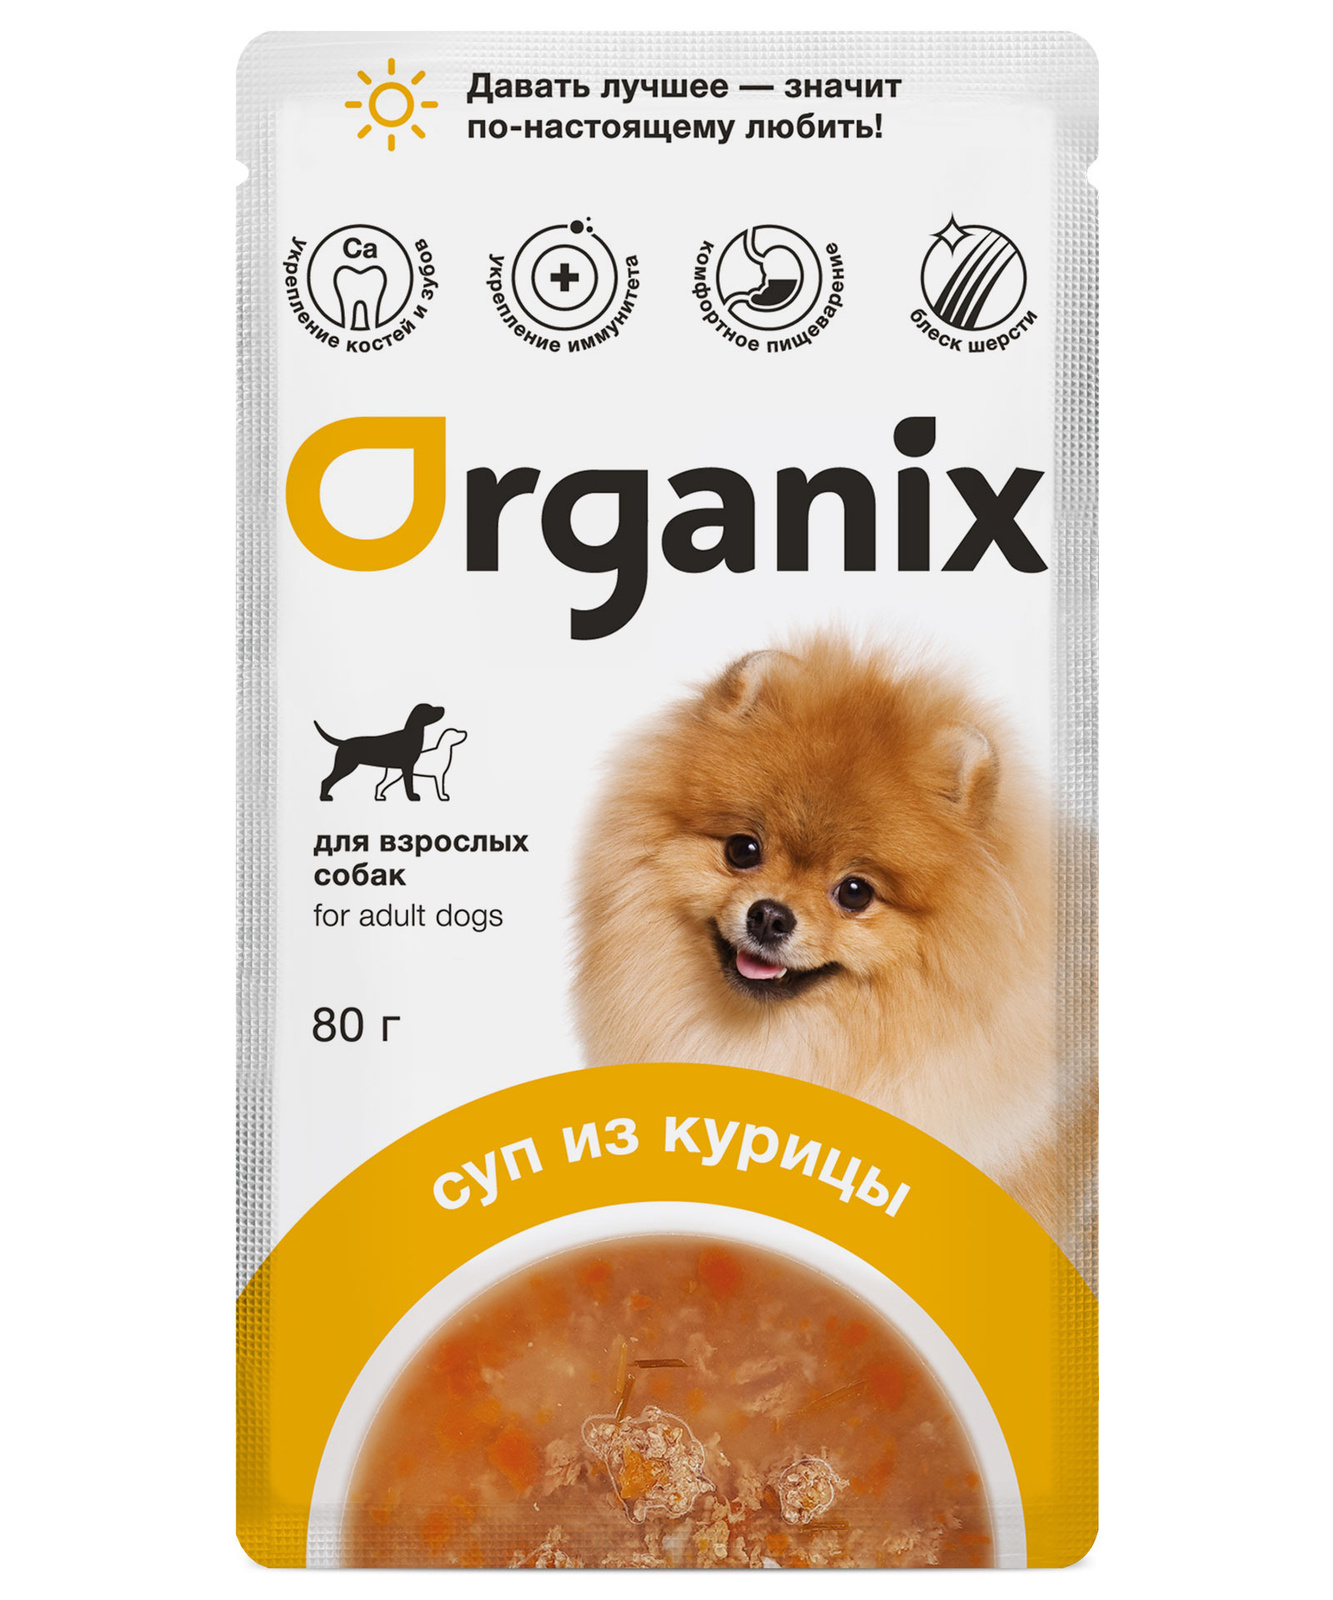 Organix паучи консервированный корм (суп) для взрослых собак Organix, с курицей, овощами и рисом (80 г)